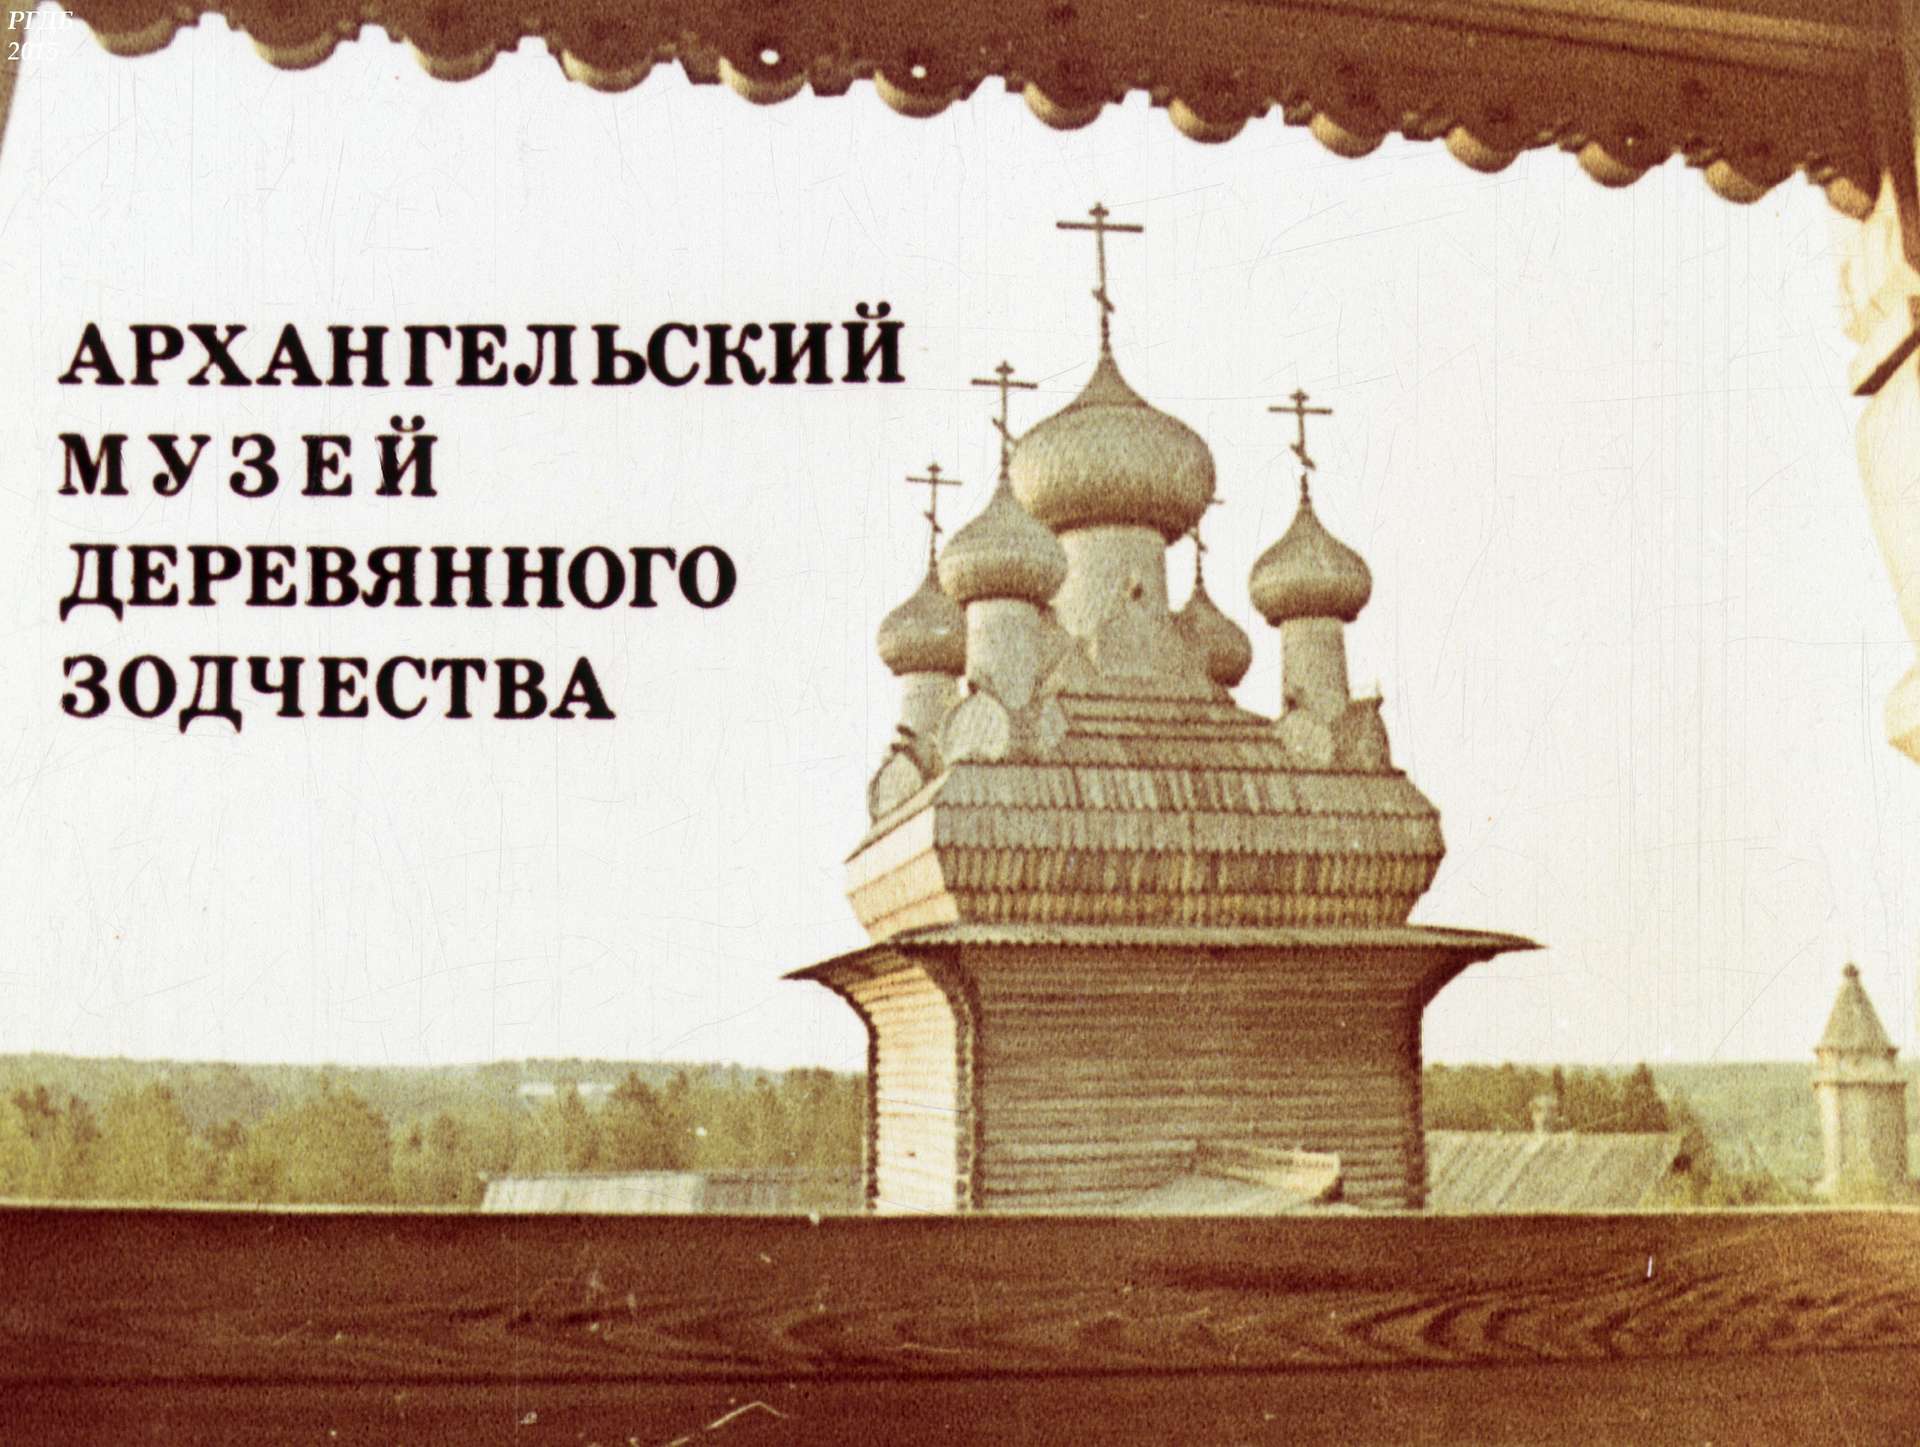 Архангельский музей деревянного зодчества